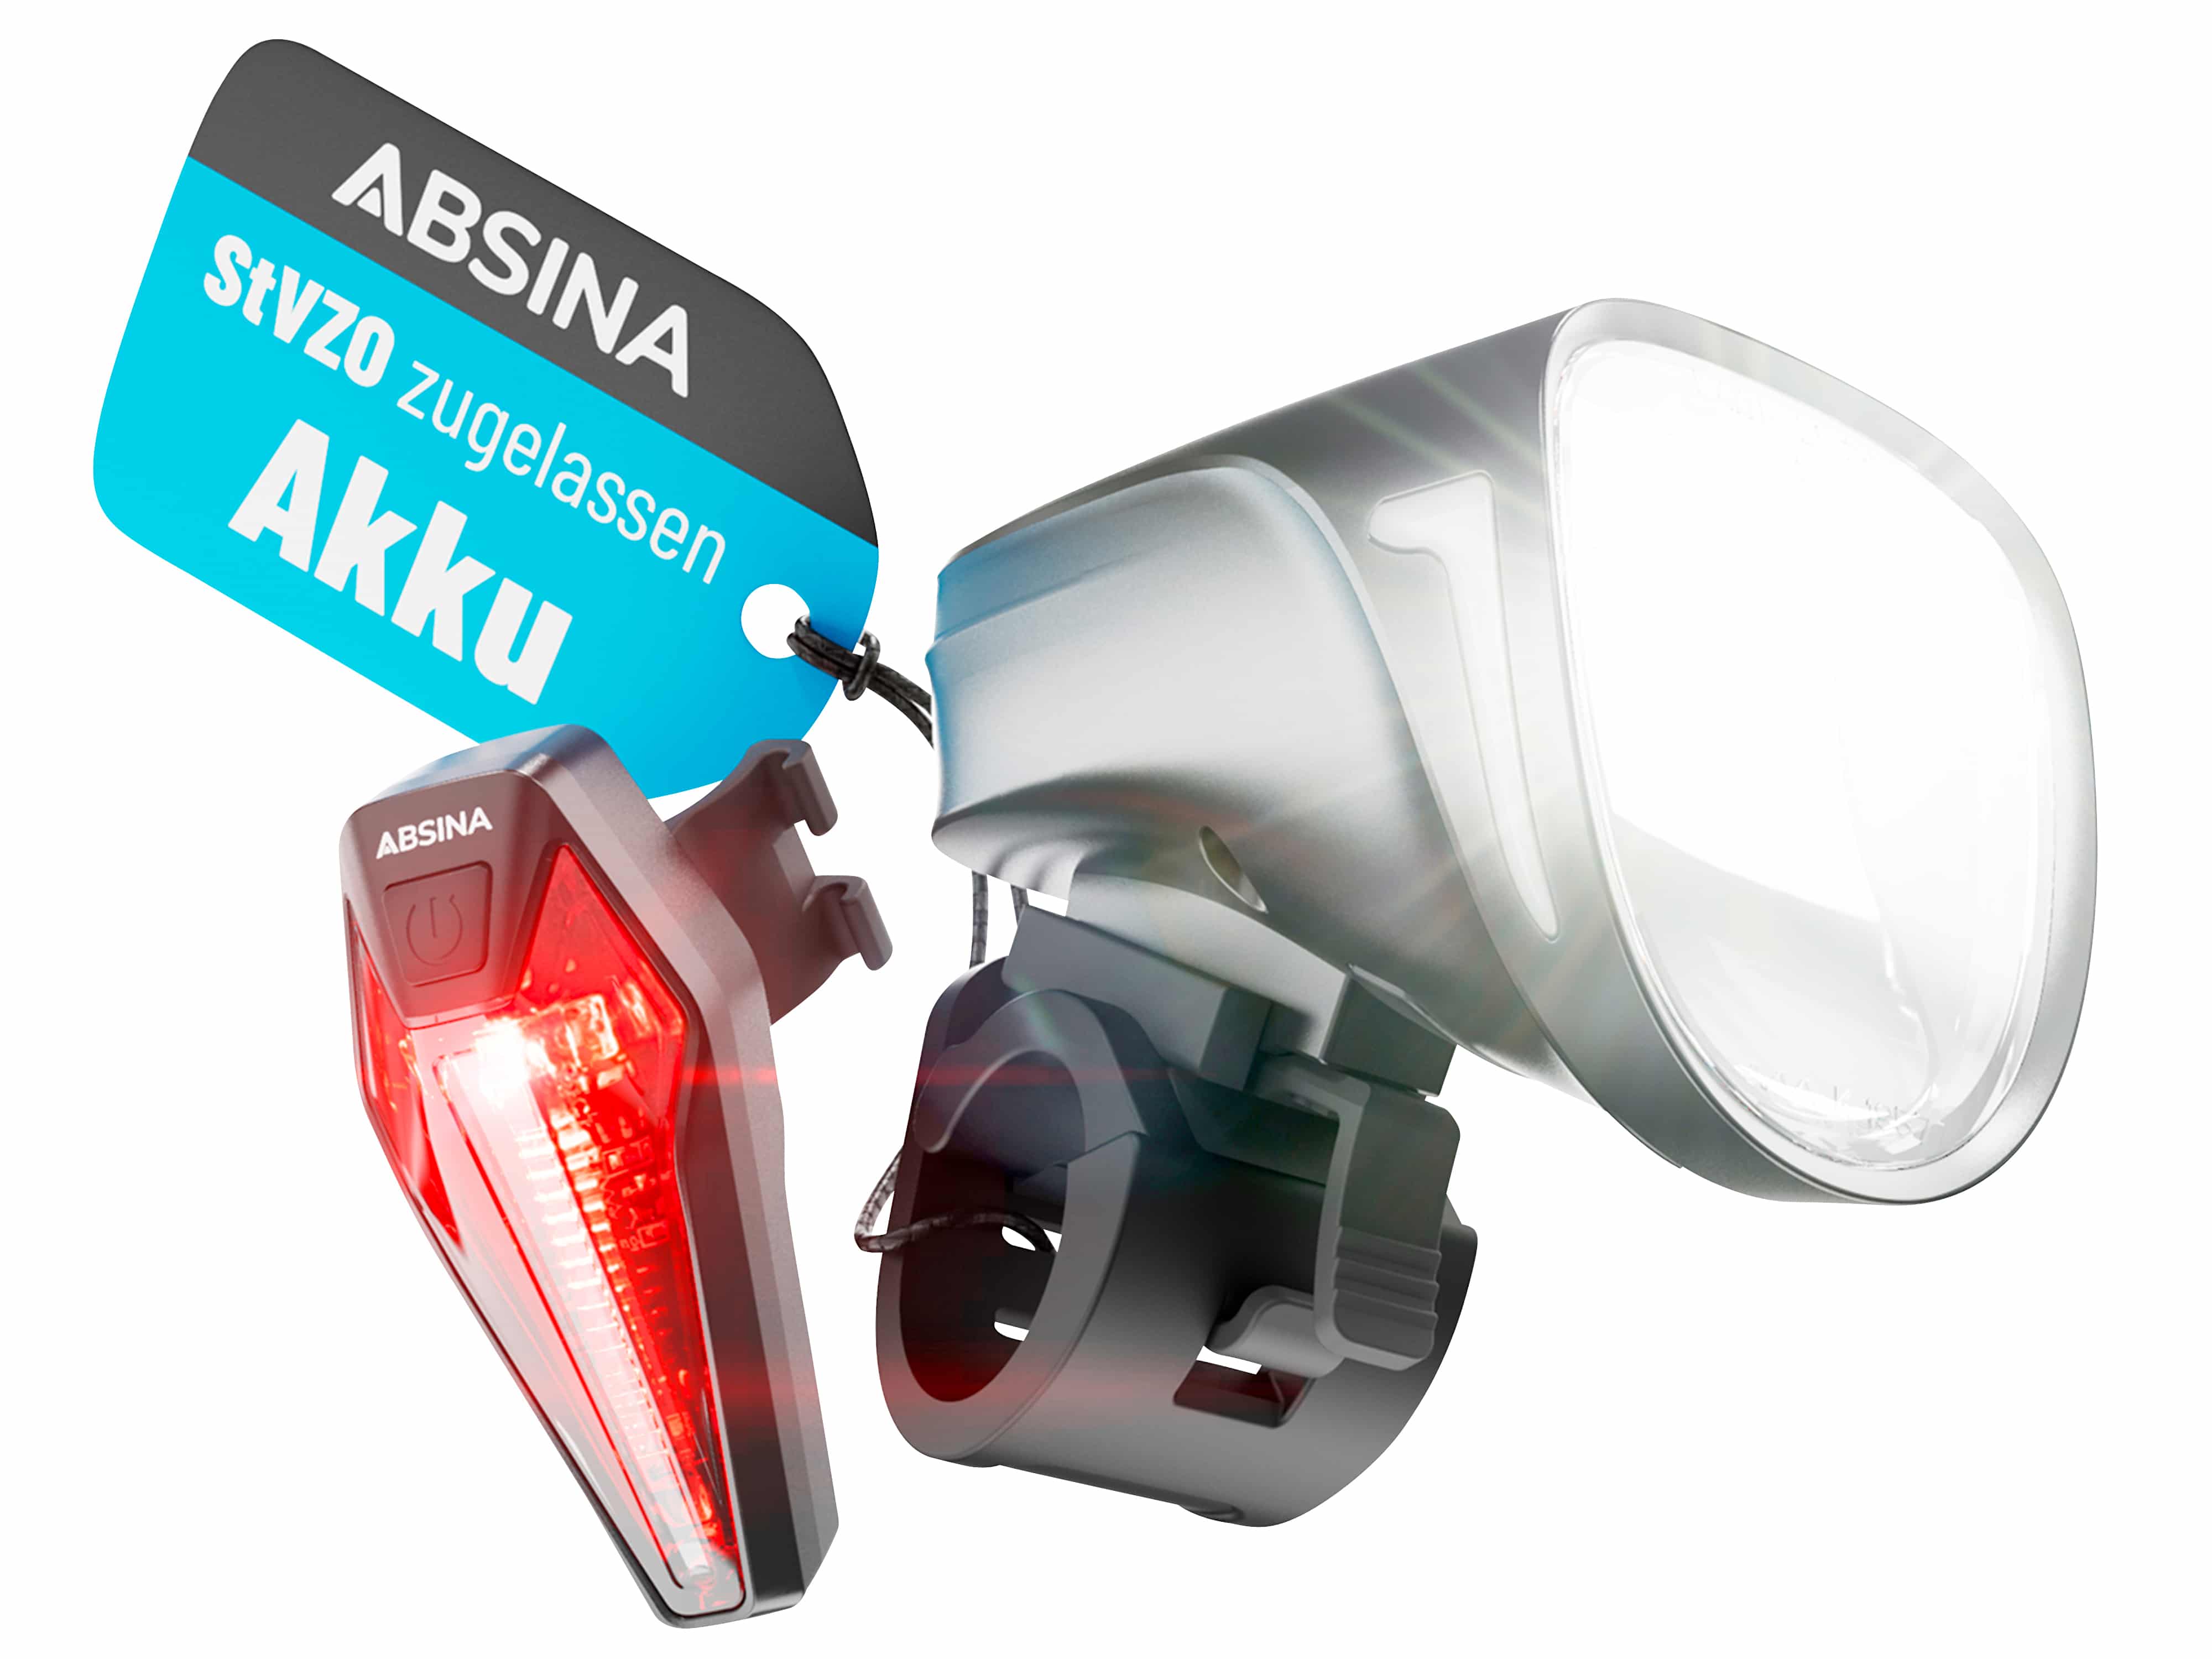 ABSINA Fahrrad-Beleuchtungsset Comfort Plus, wiederaufladbar